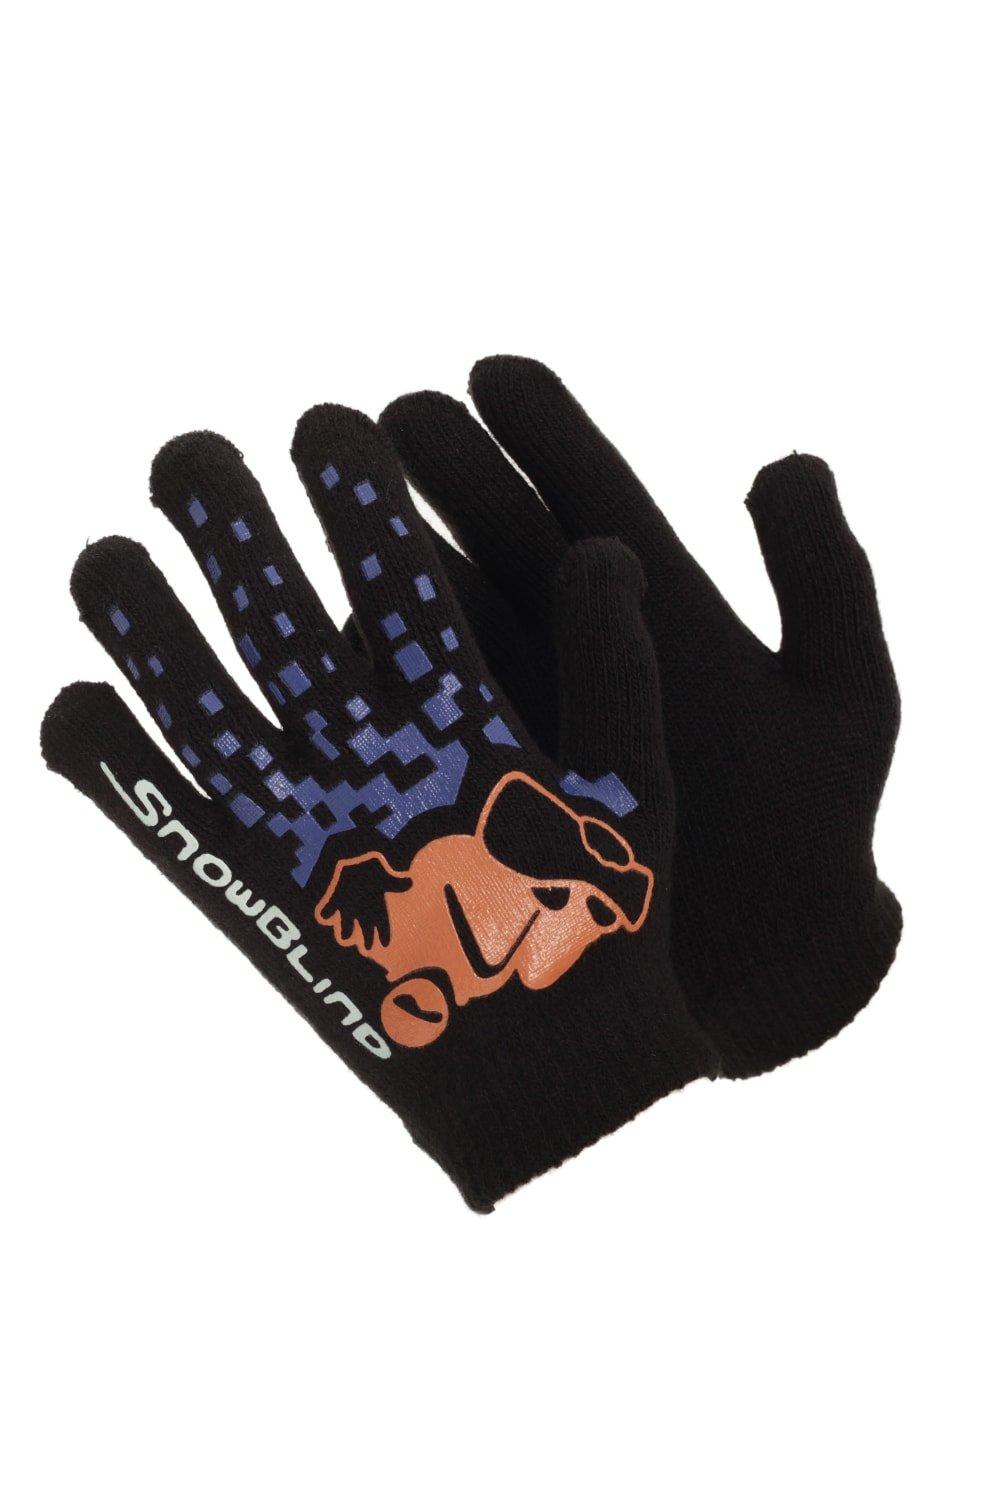 Черные зимние волшебные перчатки с резиновым принтом Universal Textiles, мультиколор распродажа термовязаные зимние перчатки universal textiles серый